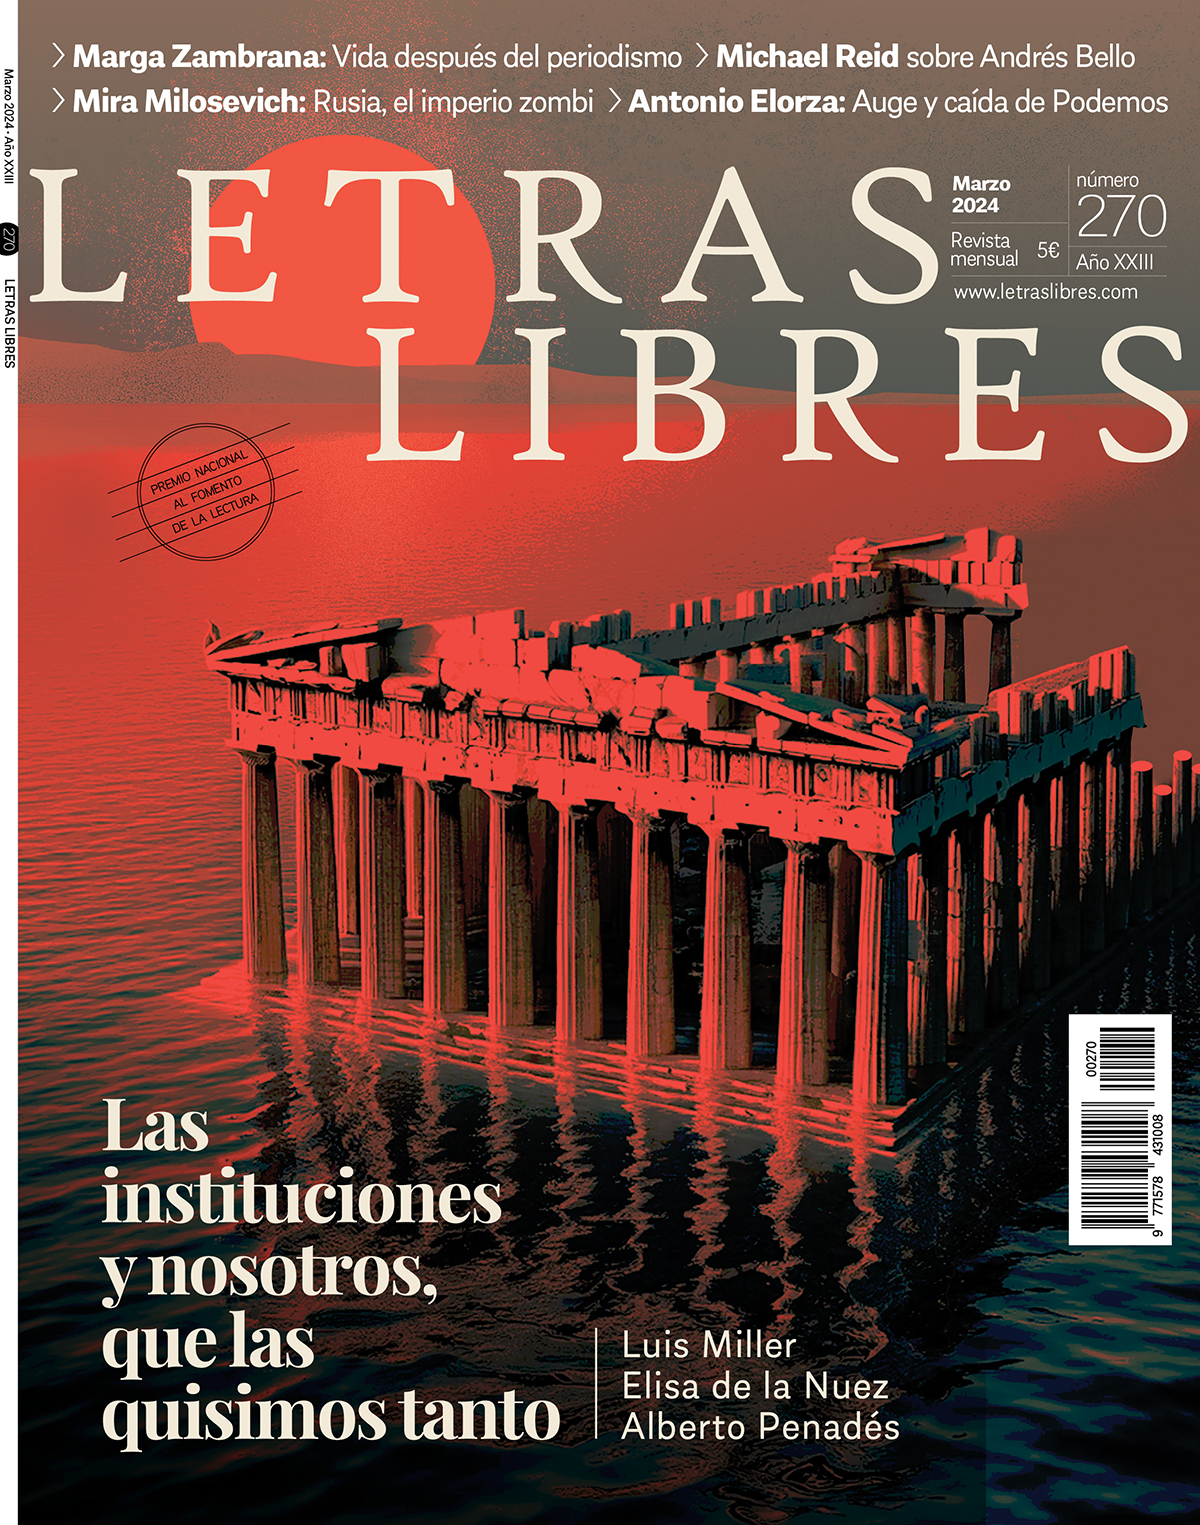 27-06-2021 - Editorial La Estrella, Flip PDF en línea